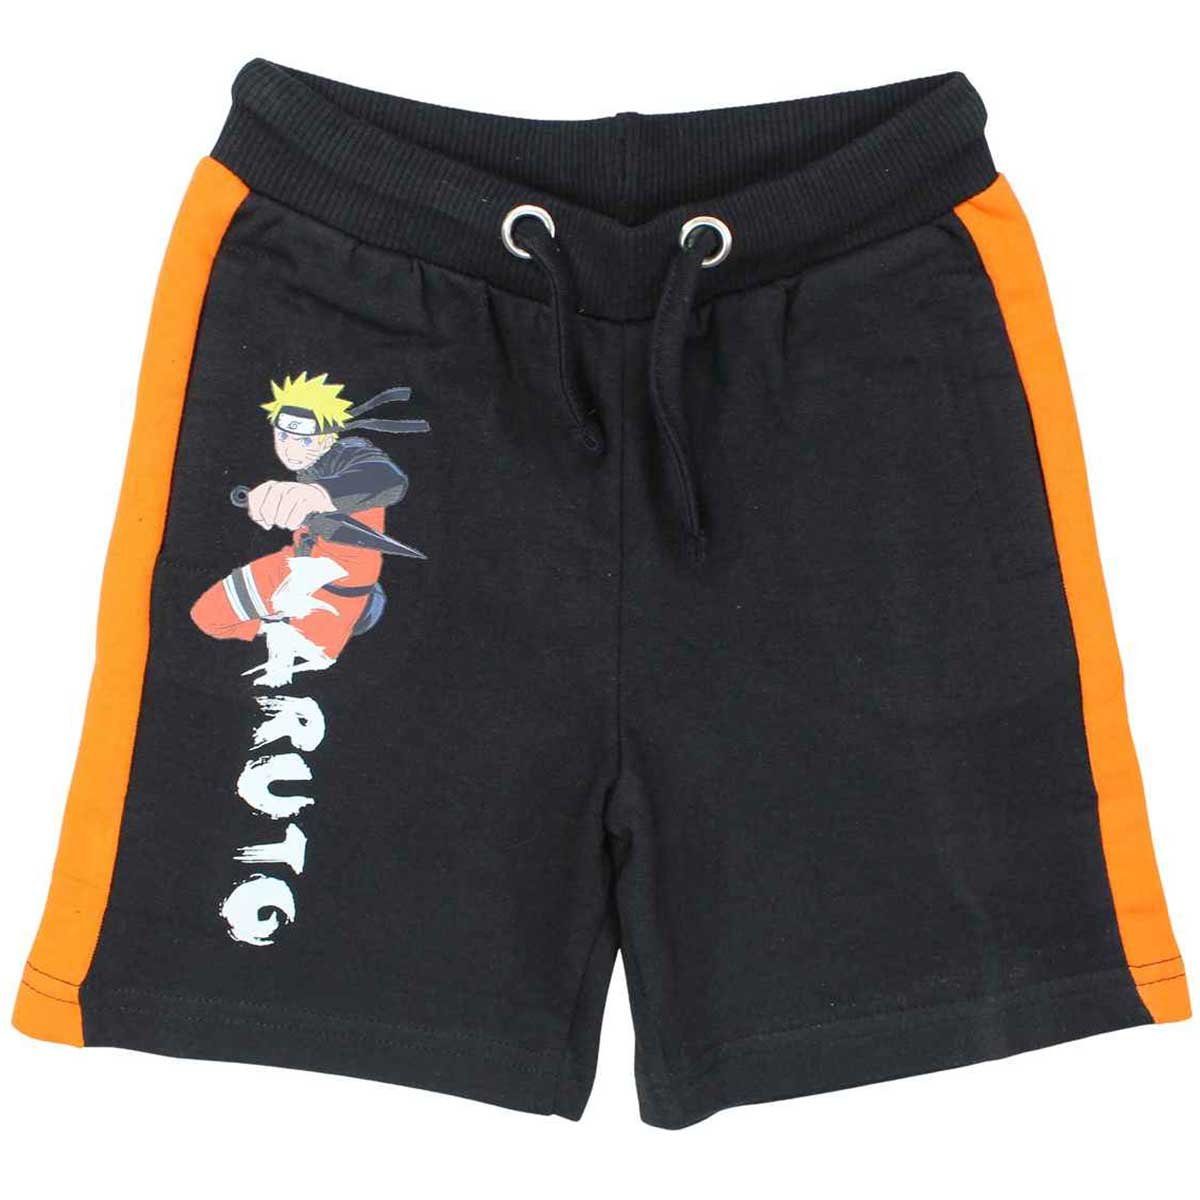 Naruto Shorts Naruto Shippuden Kinder Jungen Shorts 100% Baumwolle Gr. 110 bis 152 Schwarz